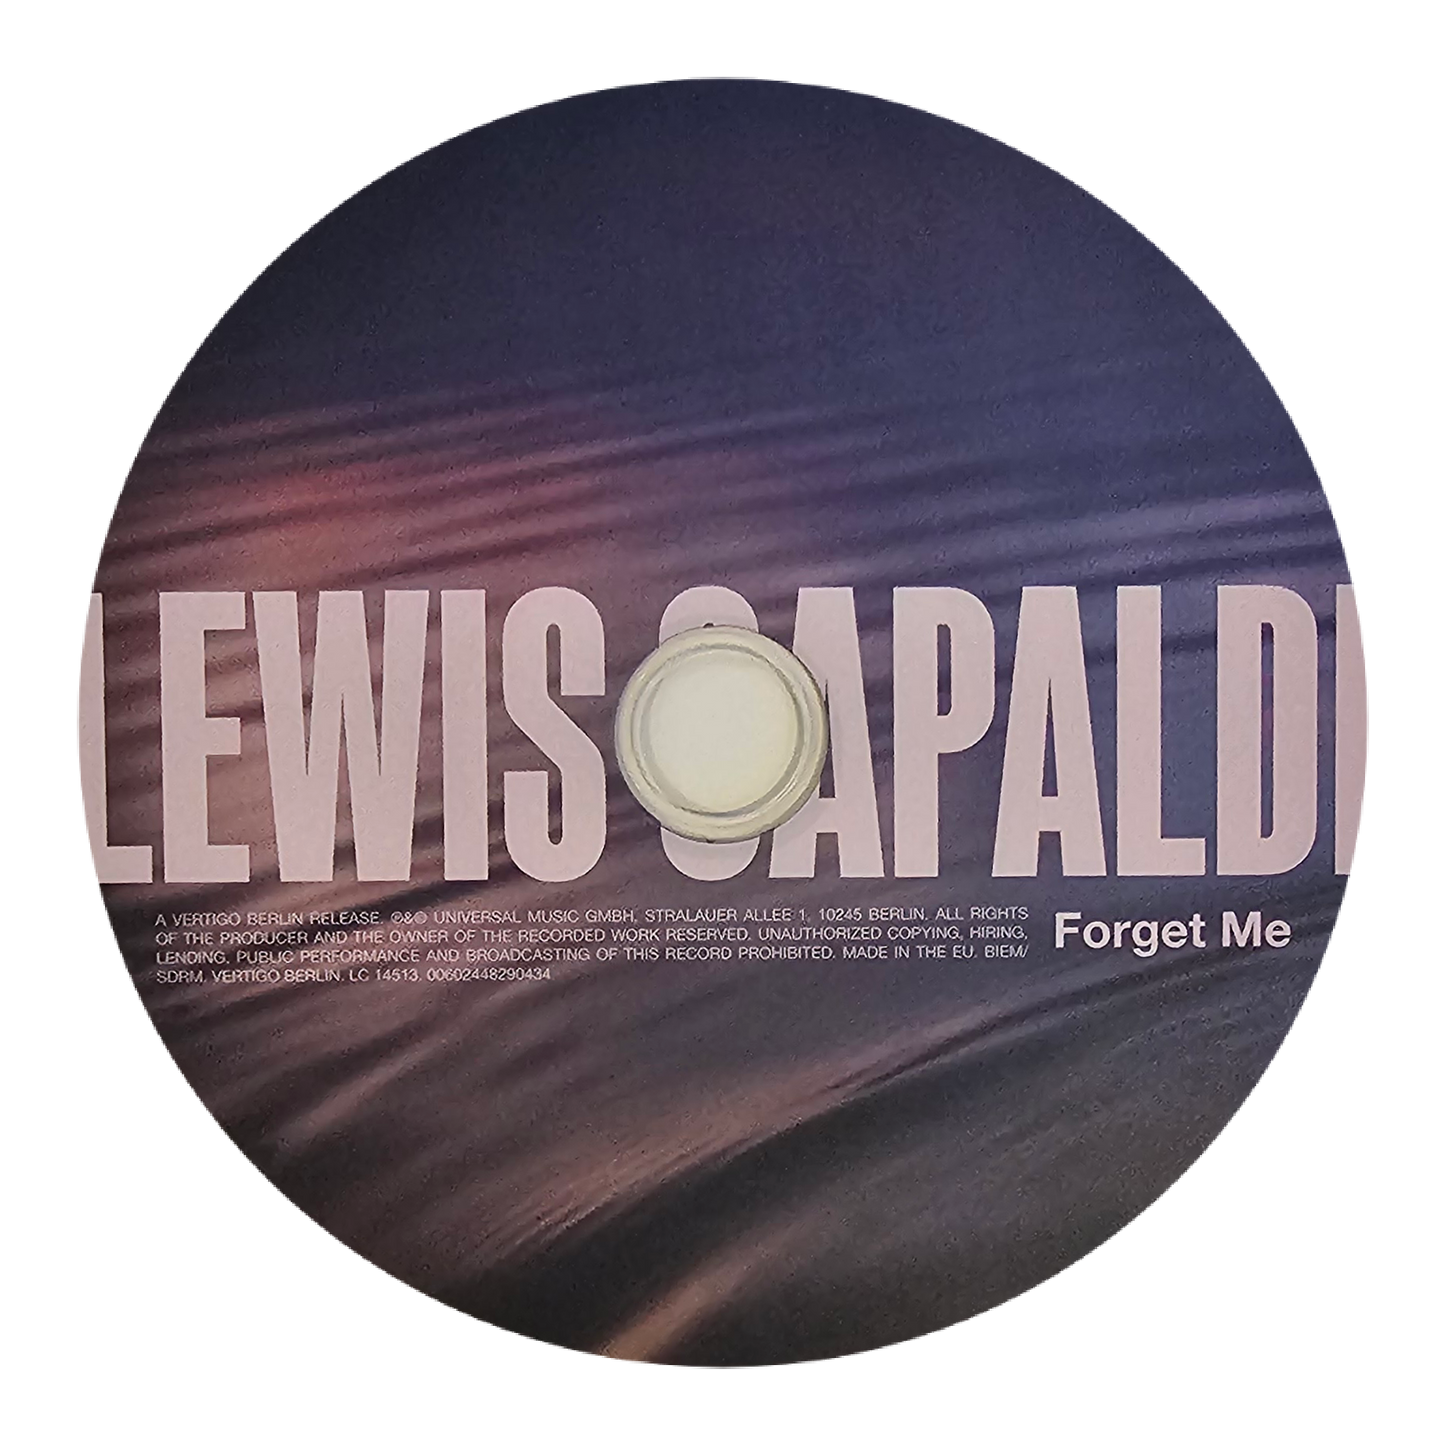 Lewis Capaldi (Forget Me)